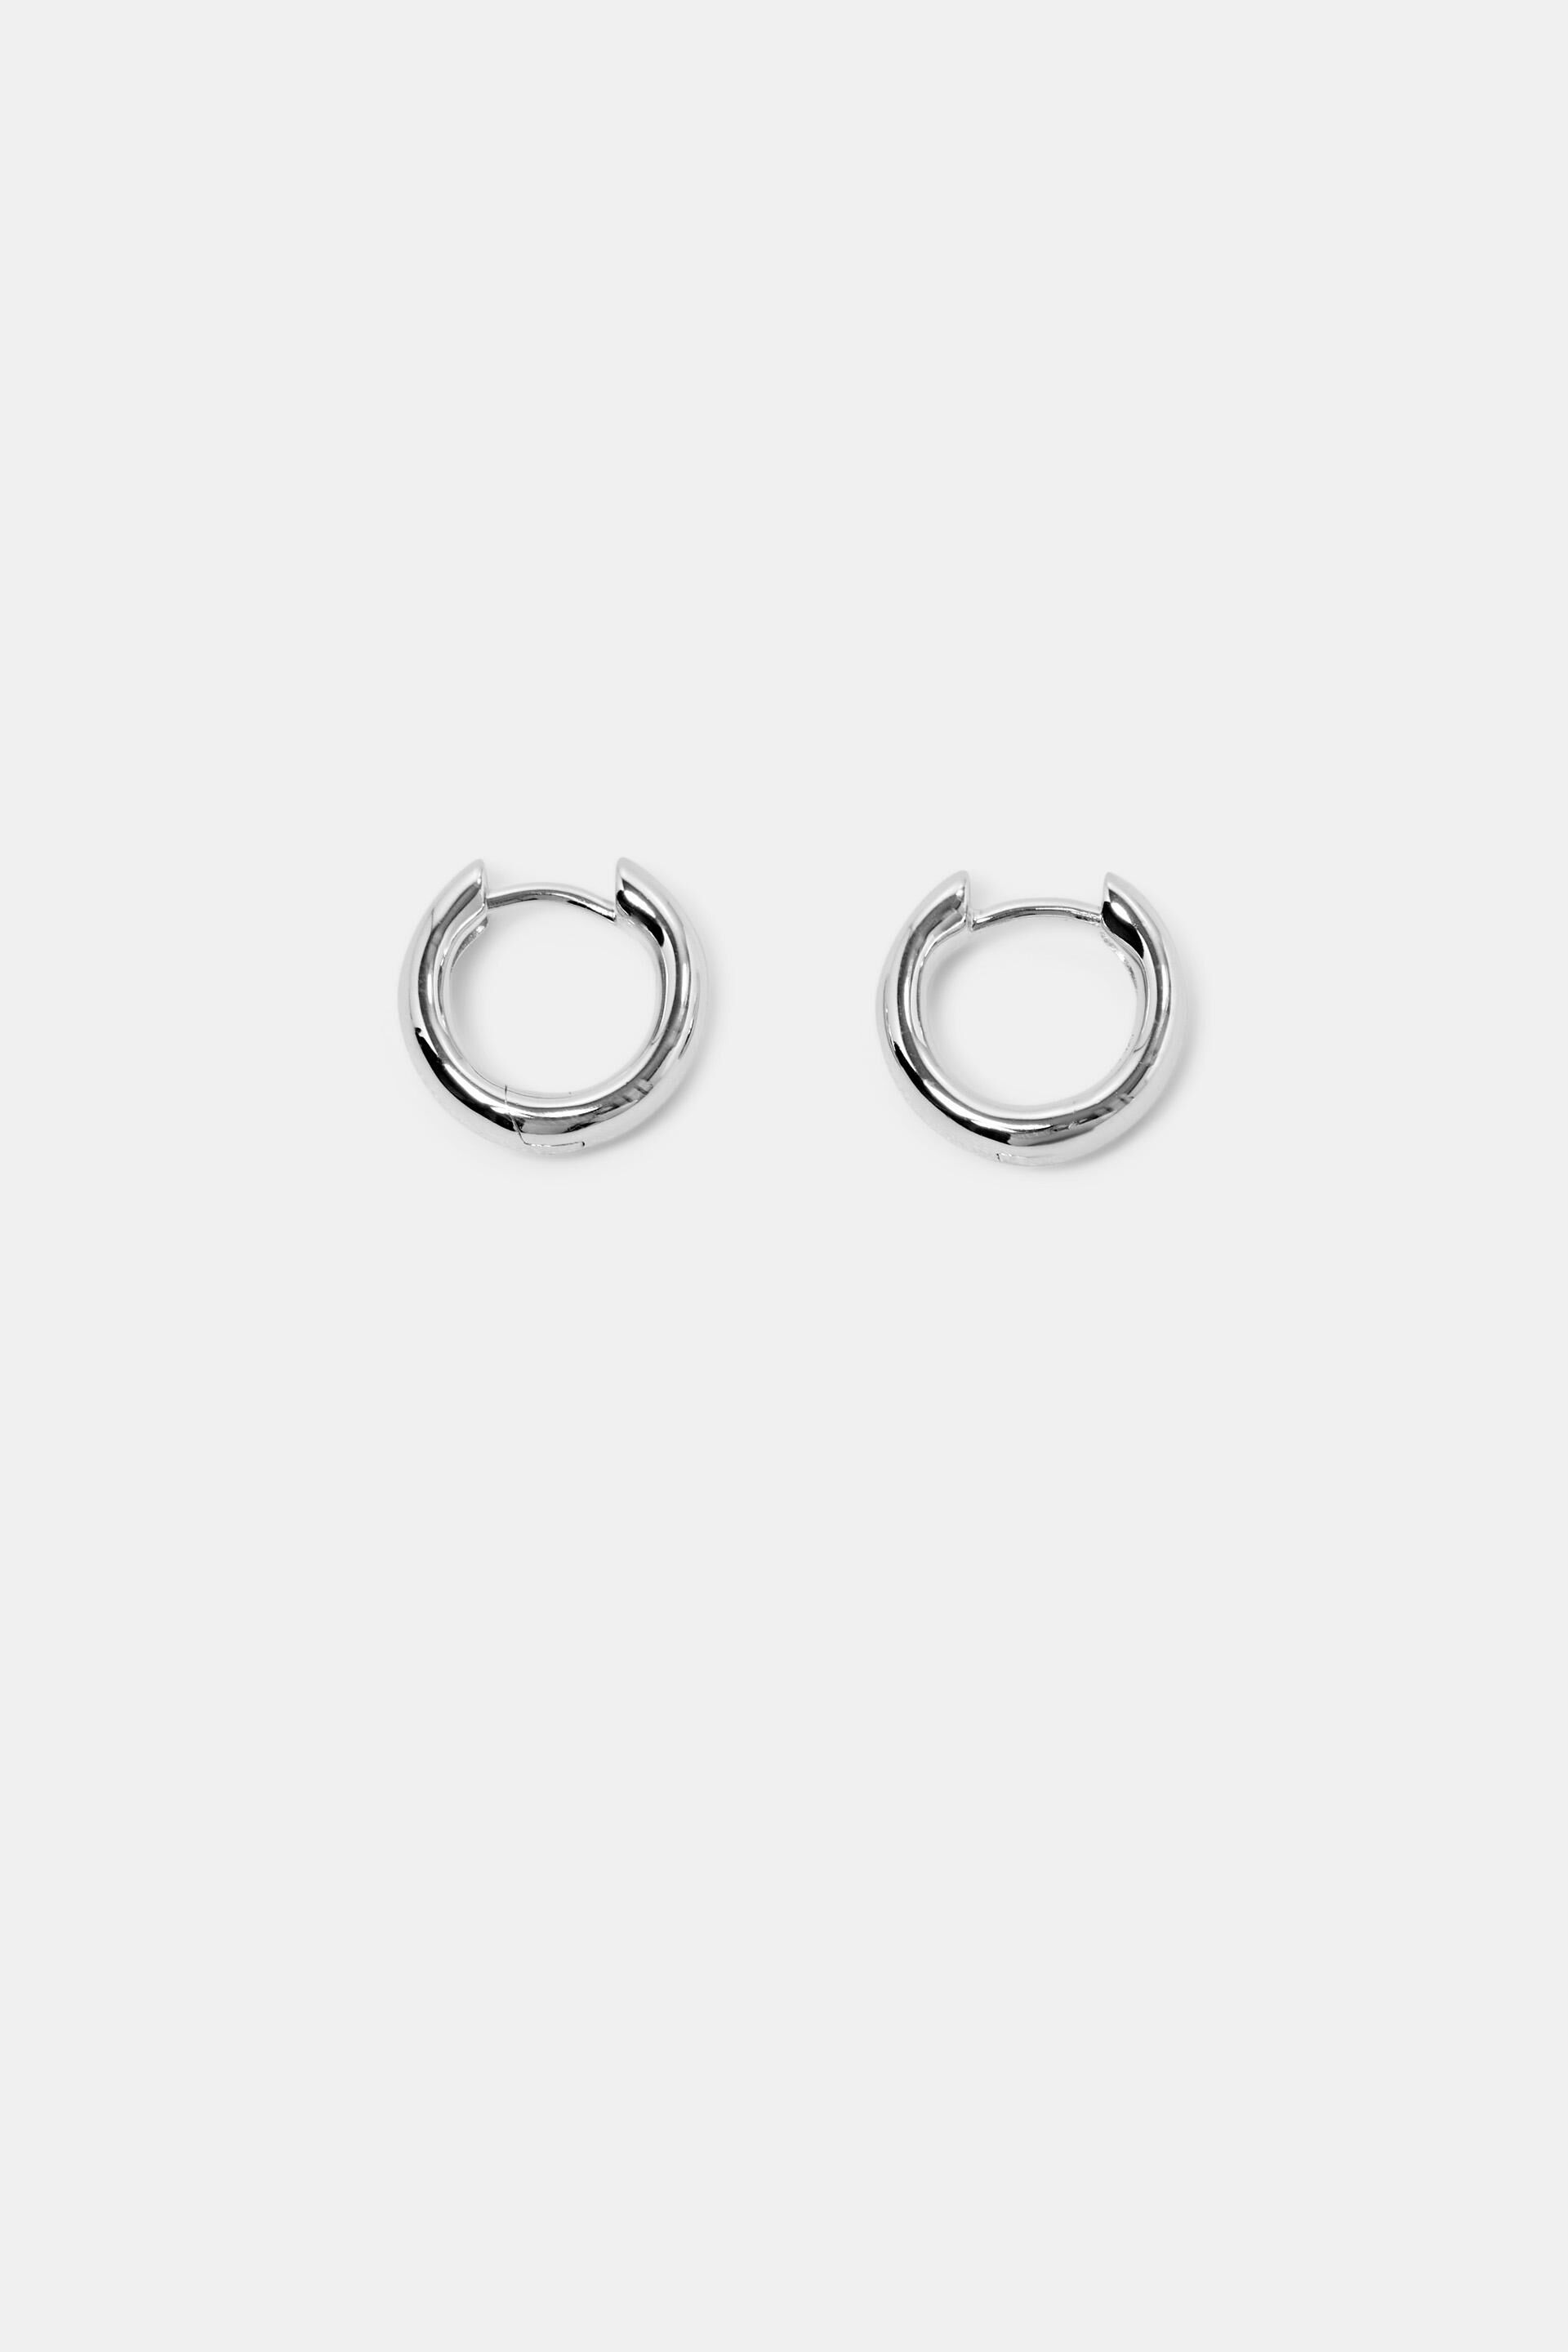 Esprit Silver Earrings Sterling Hoop Small